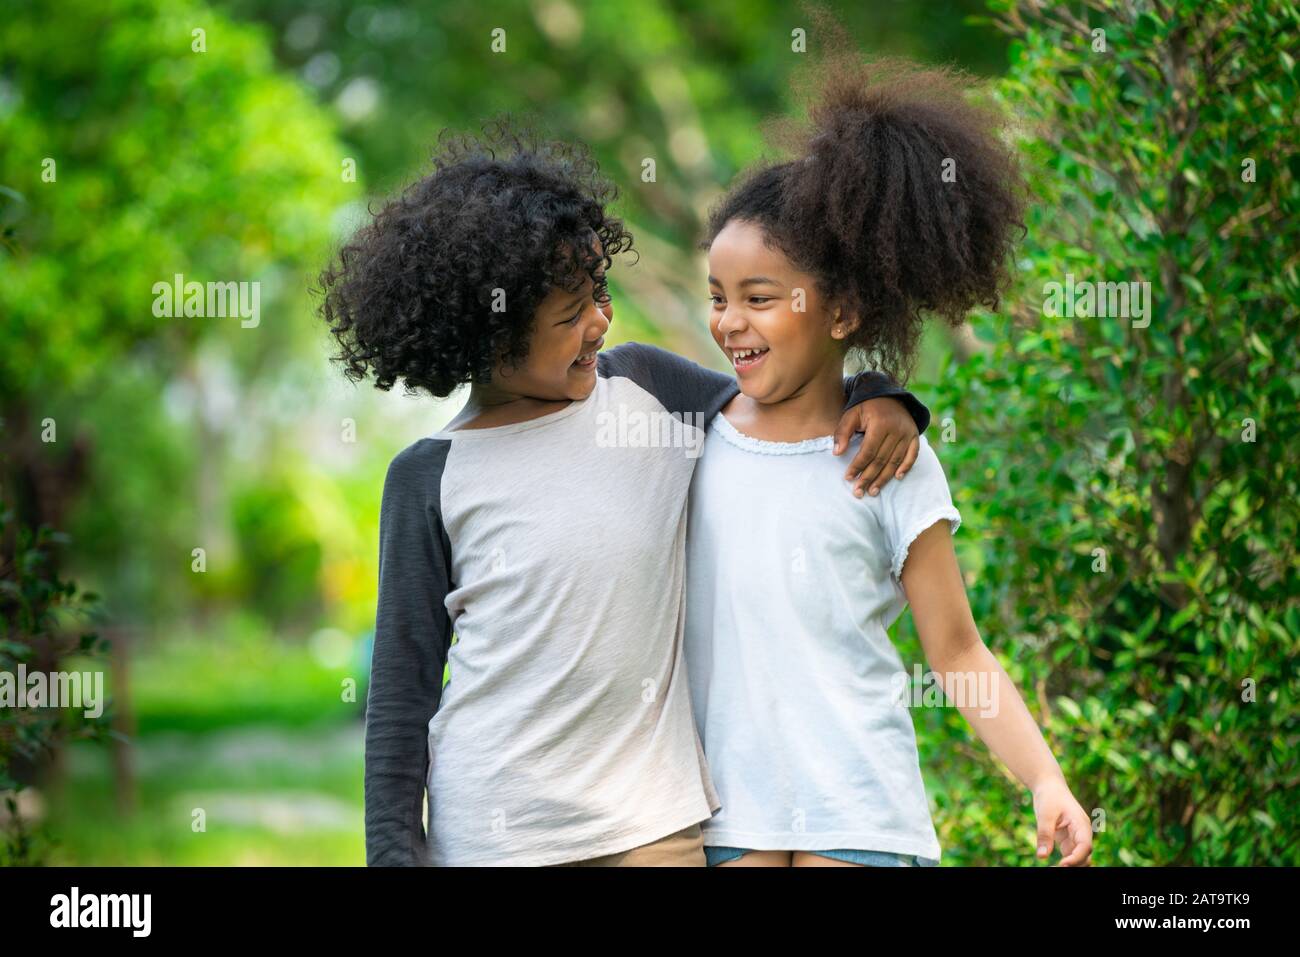 Gluckliche Kleine Jungen Und Madchen Im Park Zwei Afrikanische Amerikanische Kinder Zusammen In Den Garten Stockfotografie Alamy